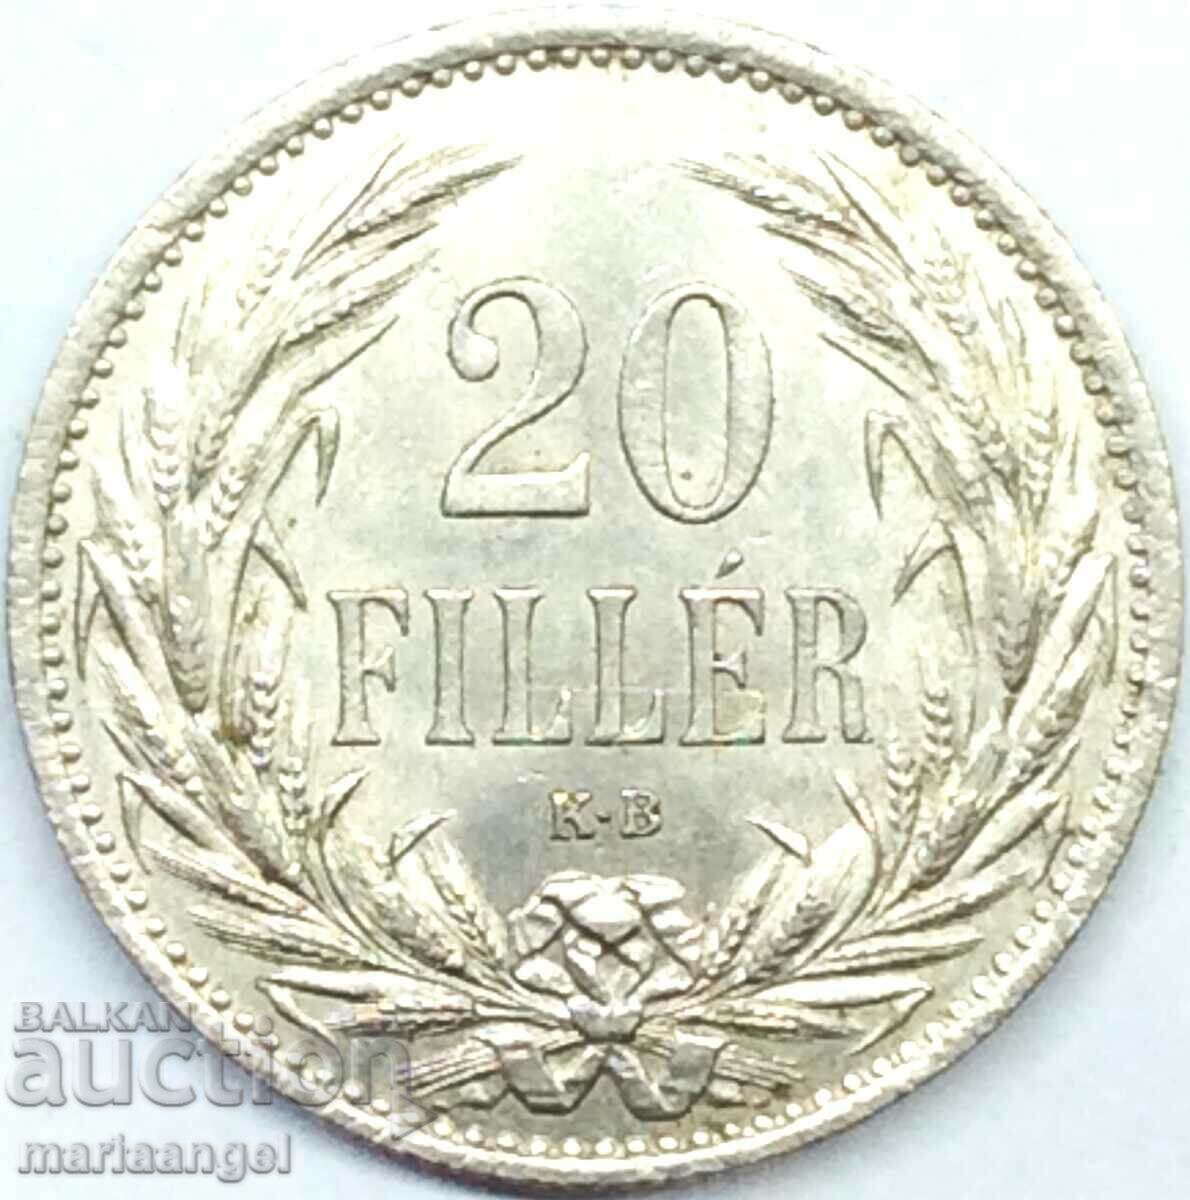 Ουγγαρία 1914 20 filler UNC - αρκετά σπάνιο